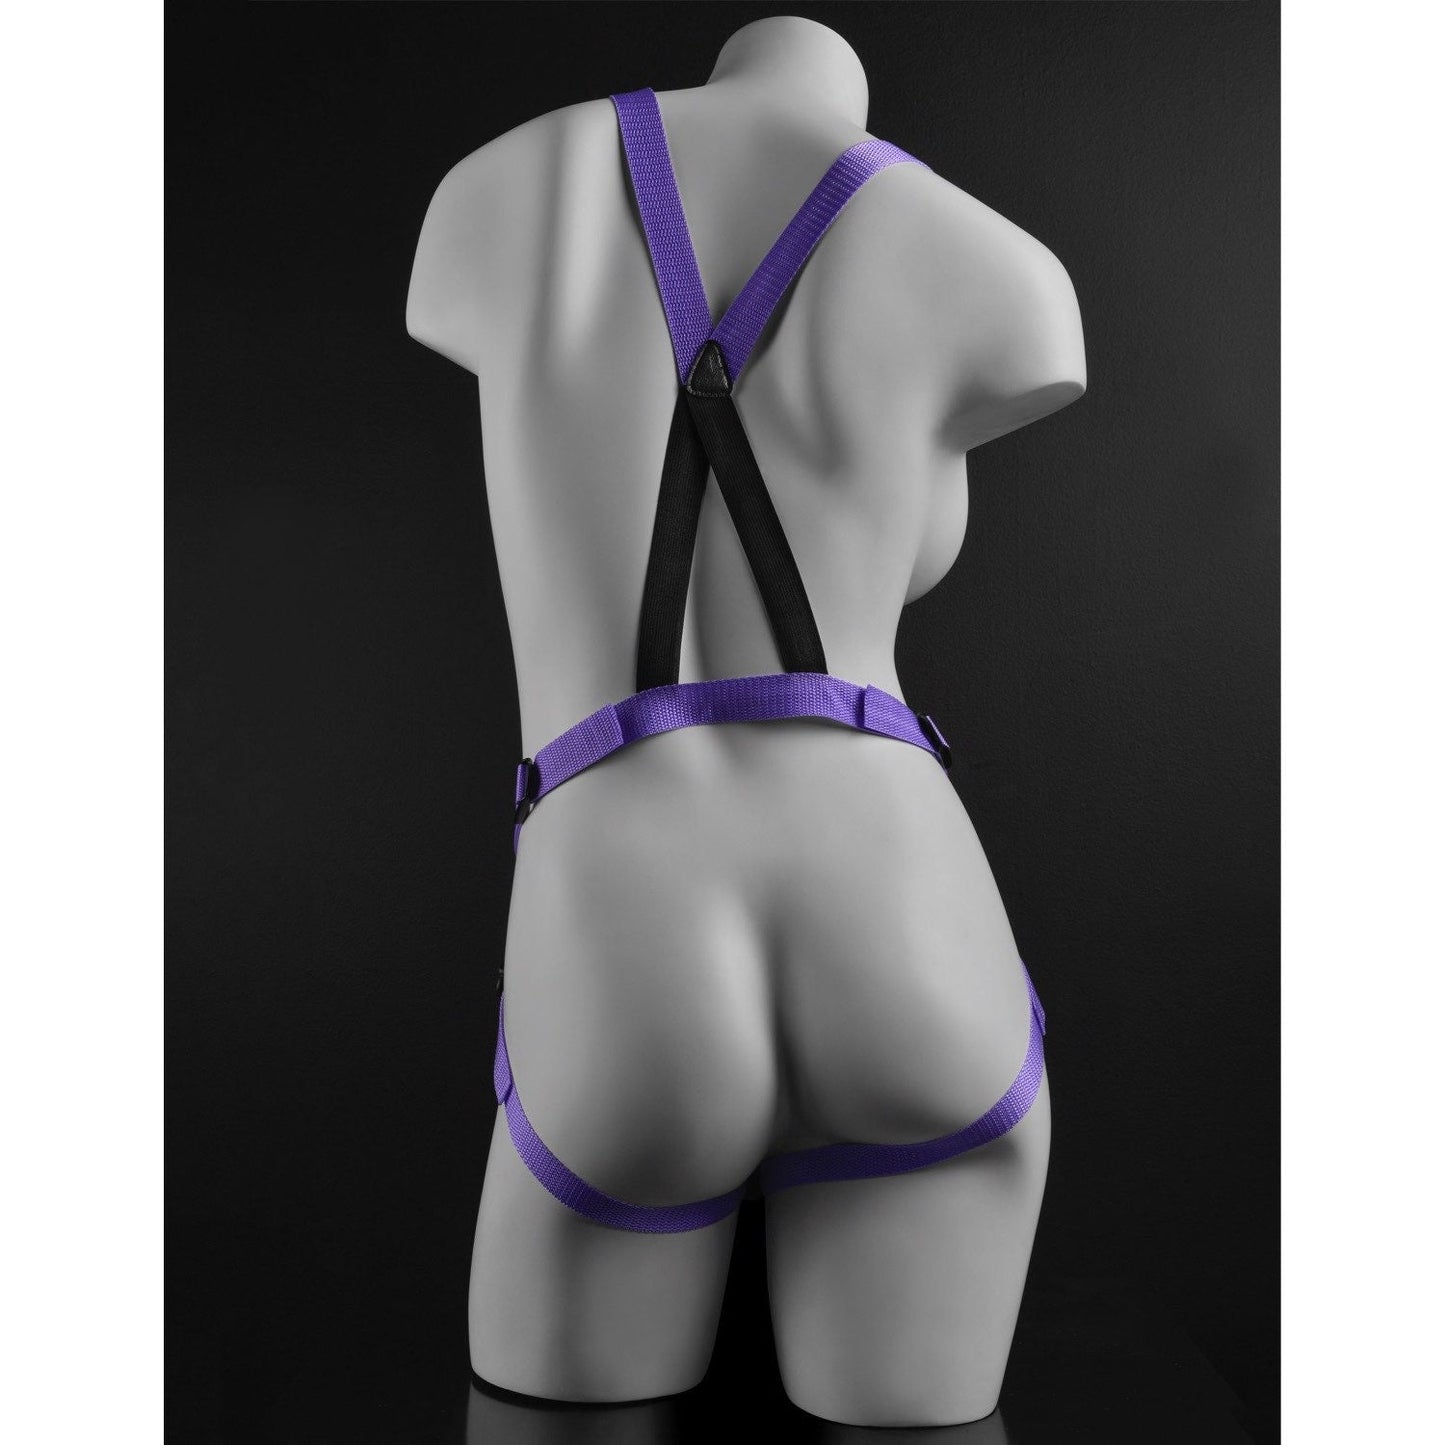 7 英寸绑带式吊带套装 - 紫色 17.8 厘米绑式带吊带